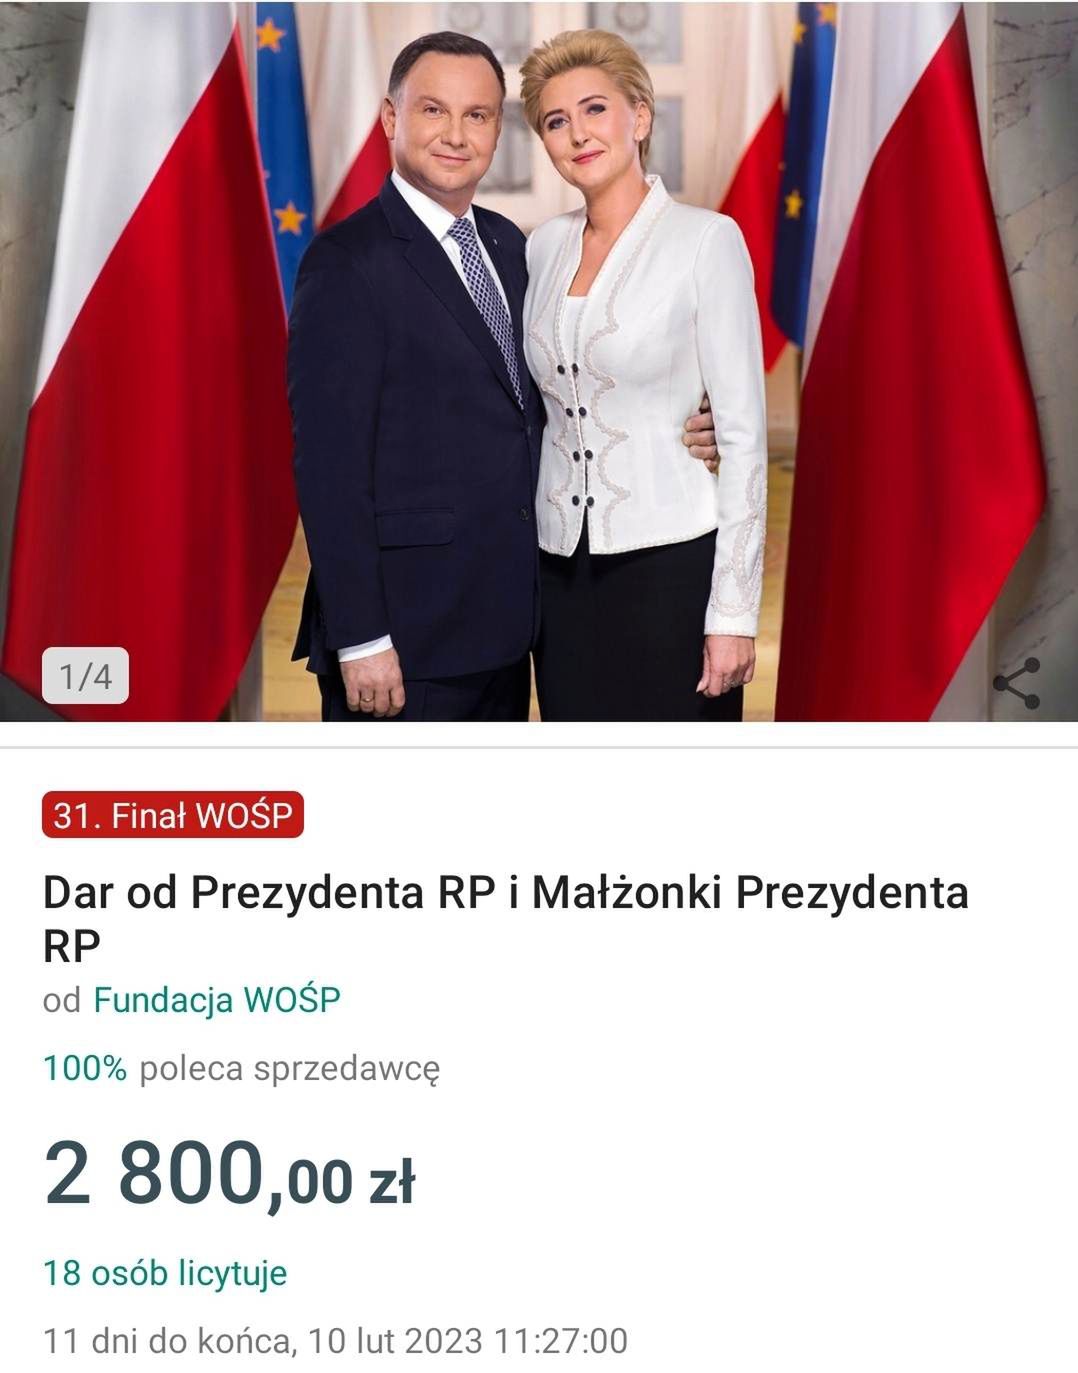 Agata Duda i Andrzej Duda - licytacja 31. WOŚP